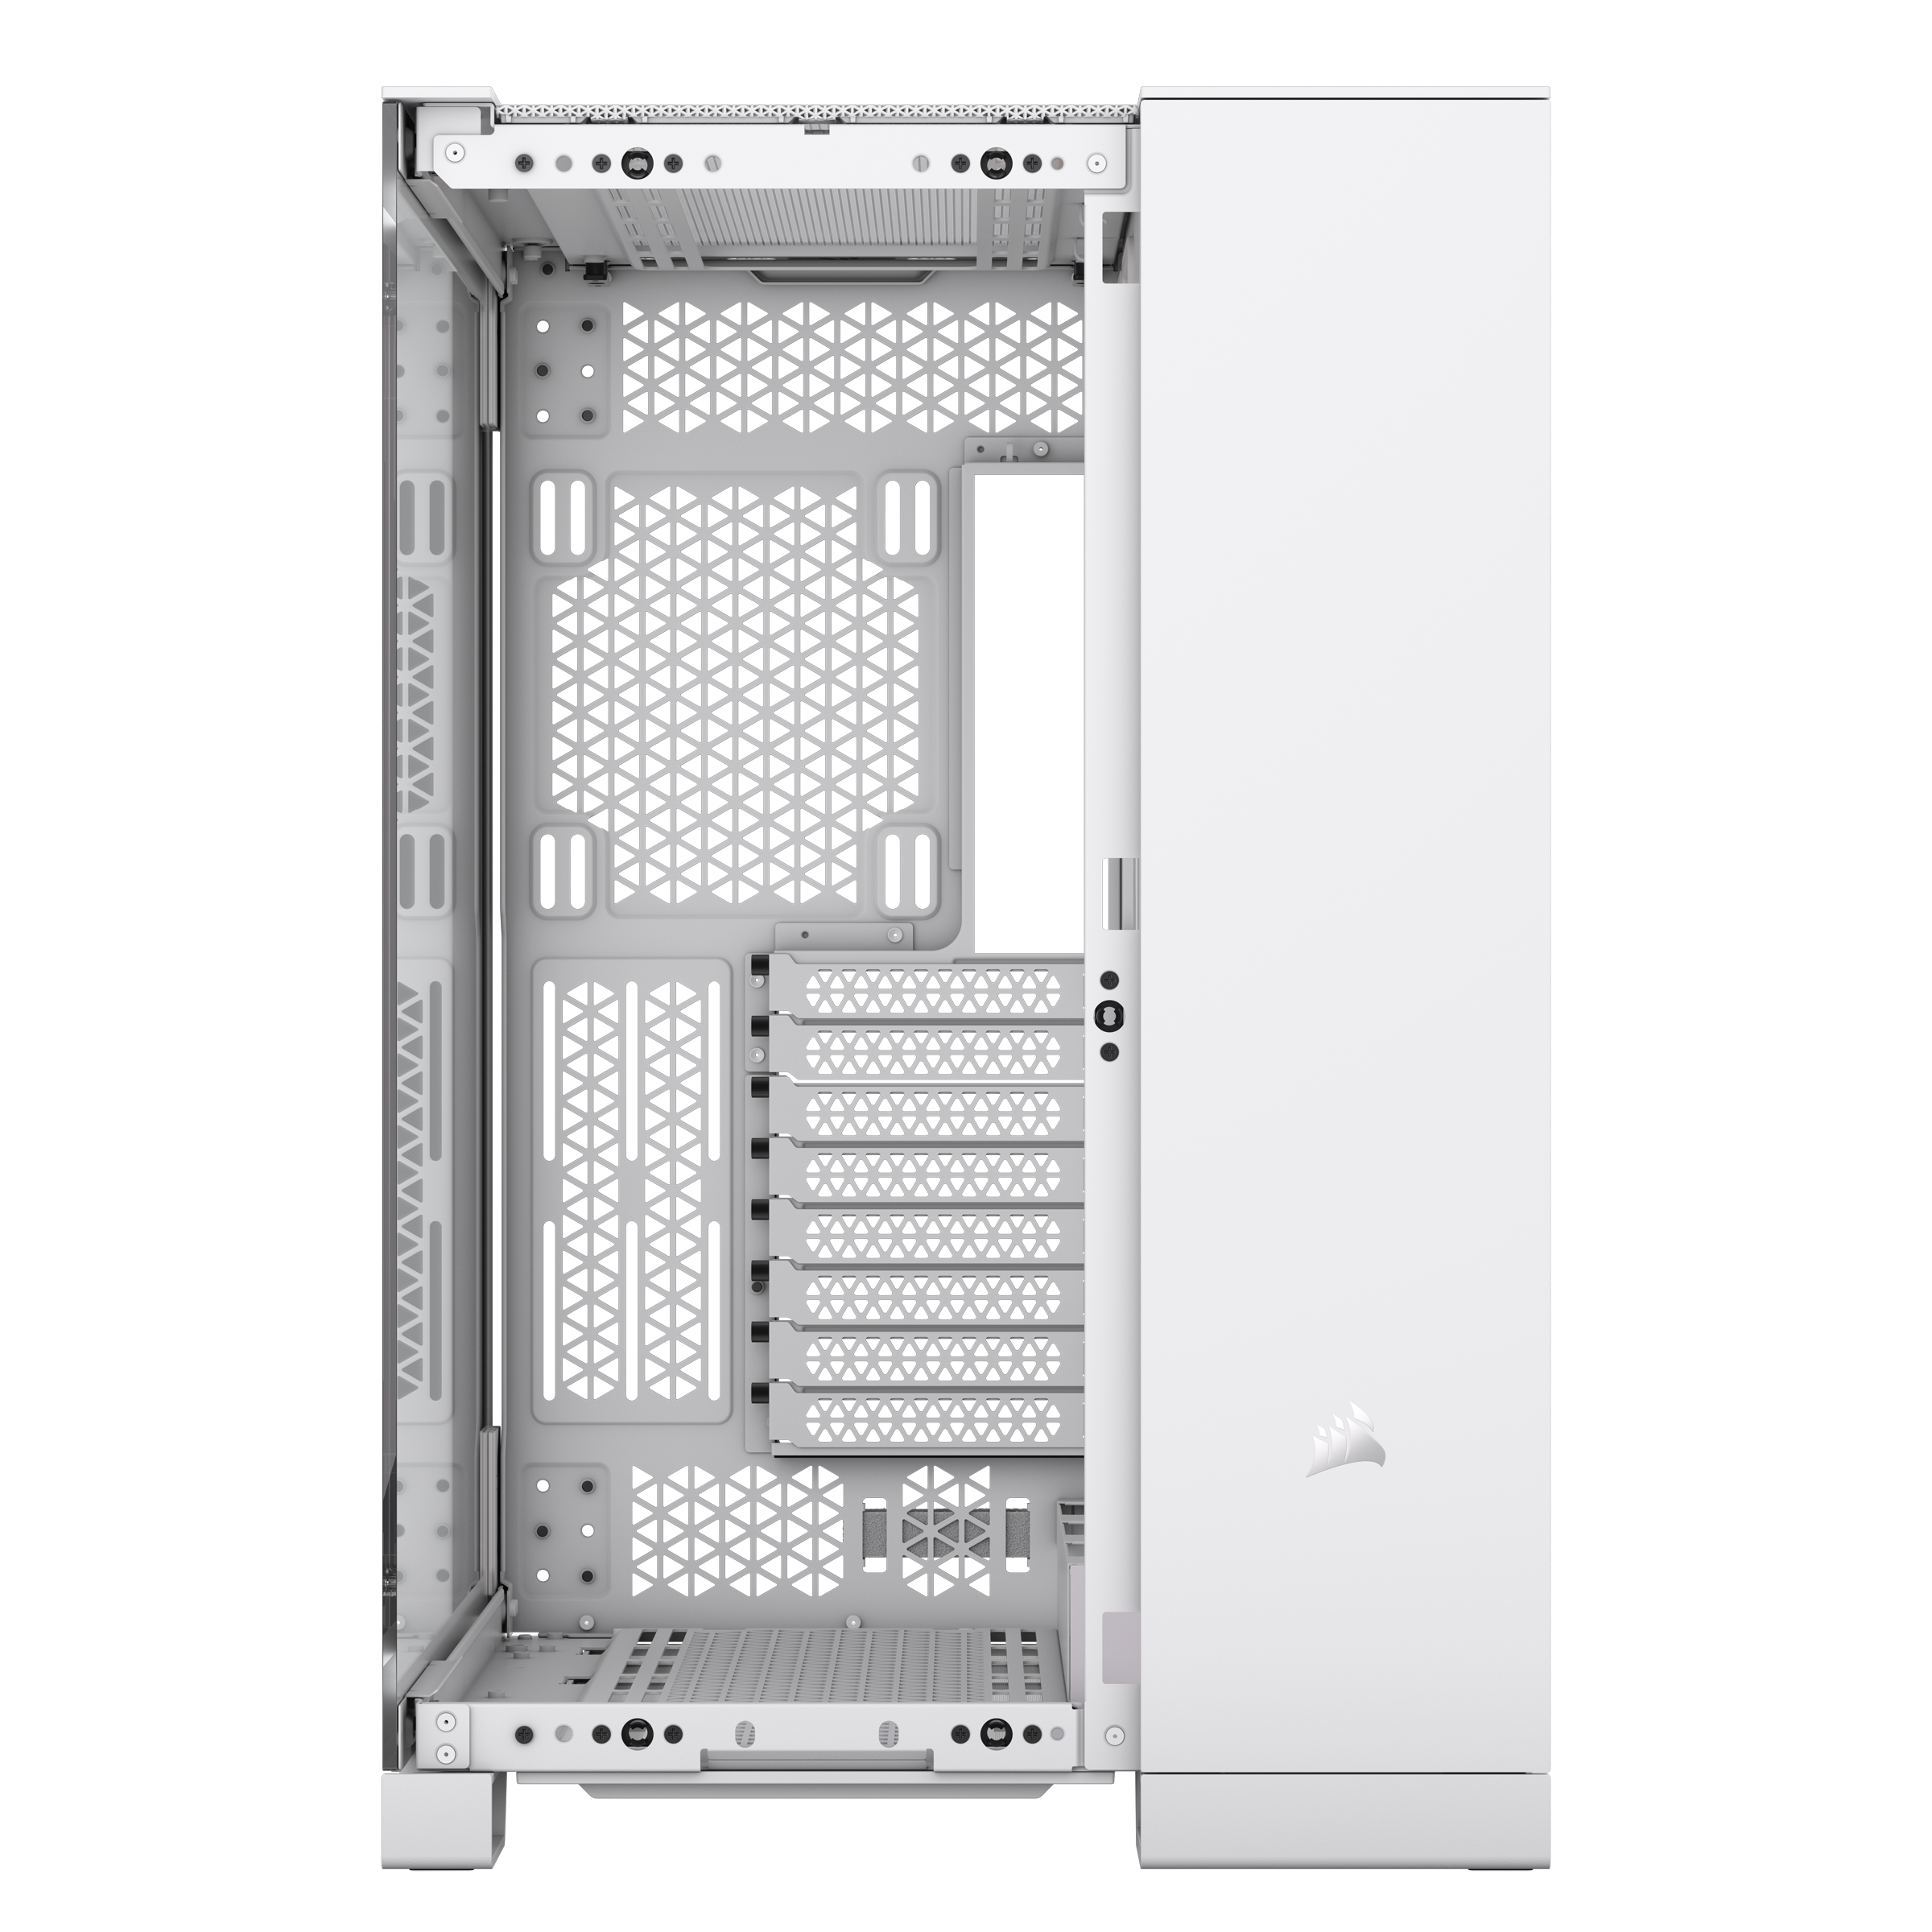 CORSAIR - Corsair iCUE LINK 6500X RGB Mid-Tower Dual Chamber PC Case - White CC-9011270-WW